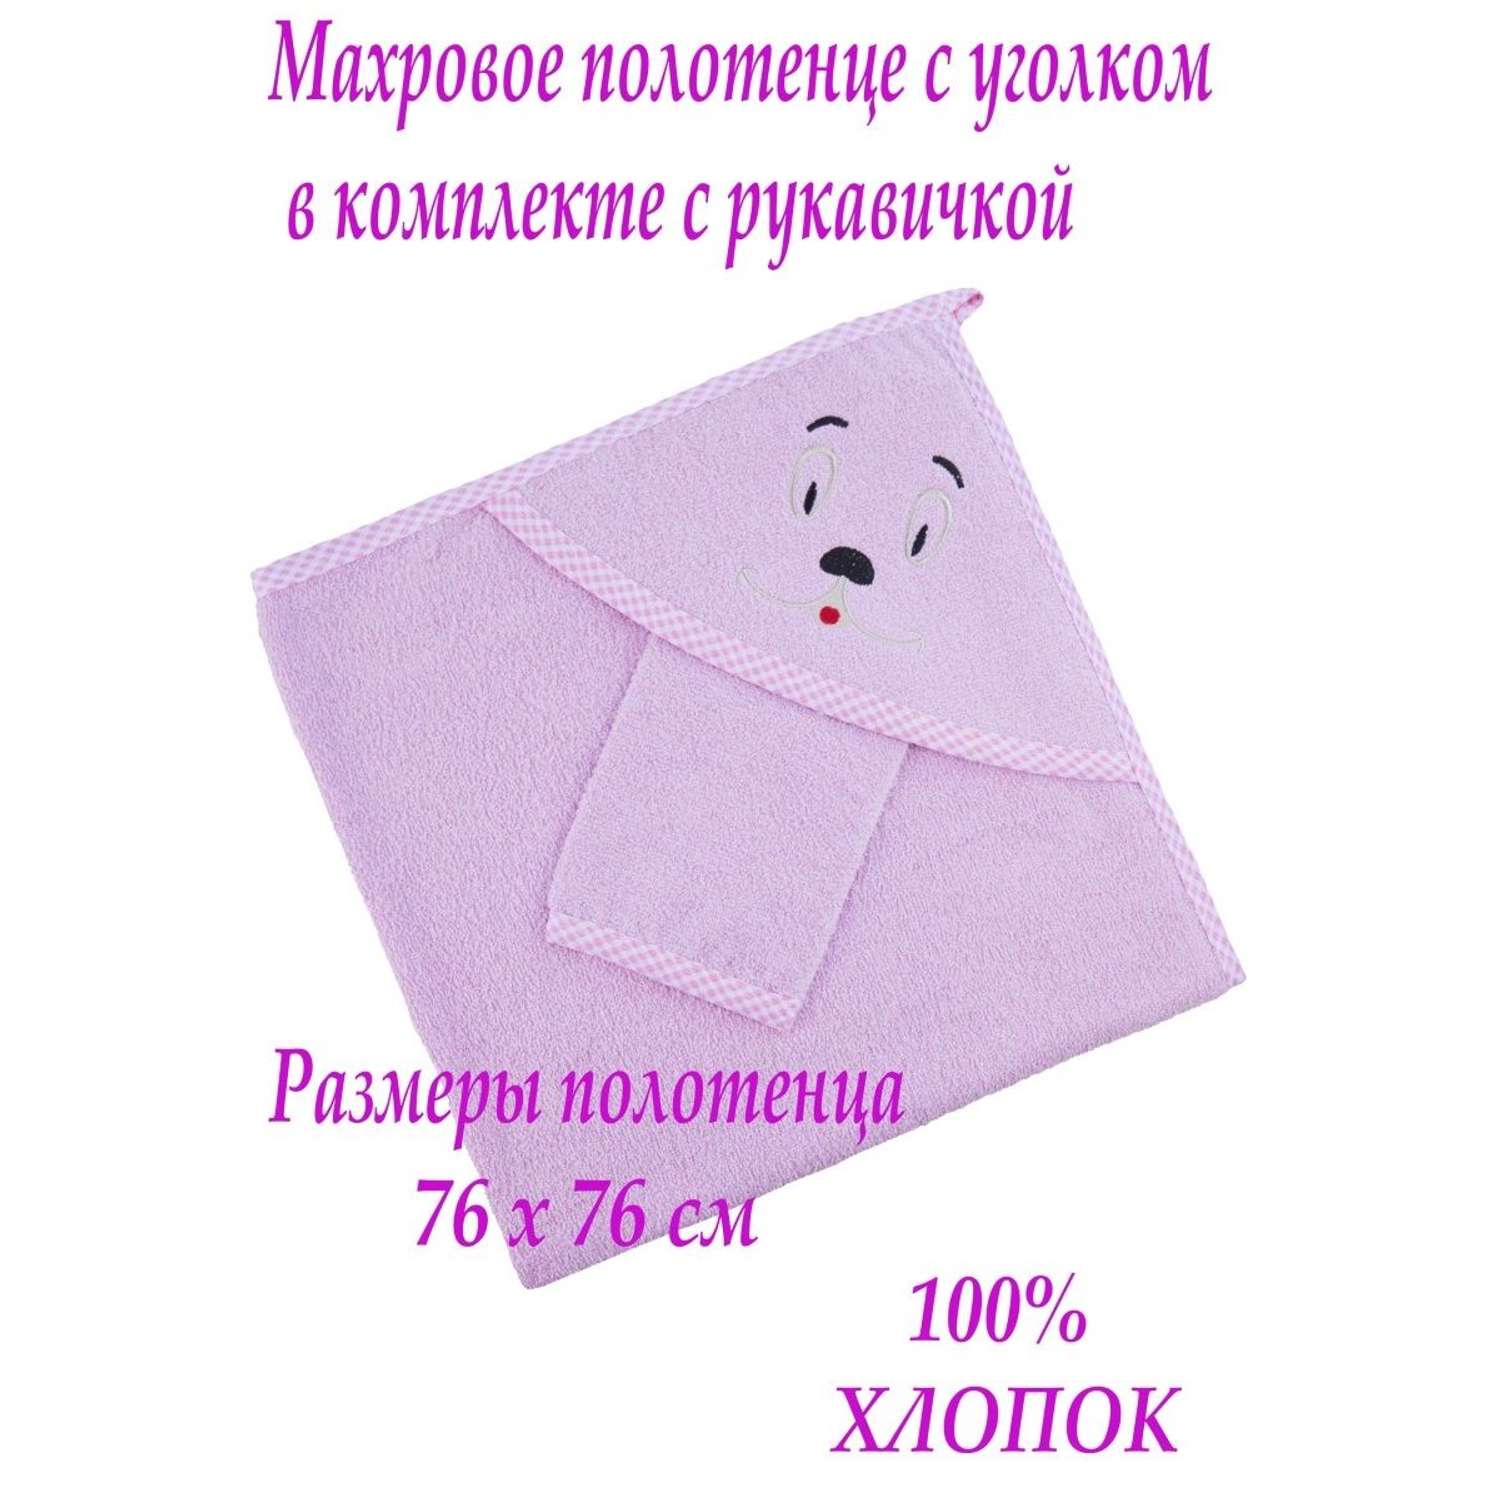 Набор для купания малыша M-BABY махровое полотенце с уголком и рукавичка 100% хлопок мордочка/розовый - фото 2